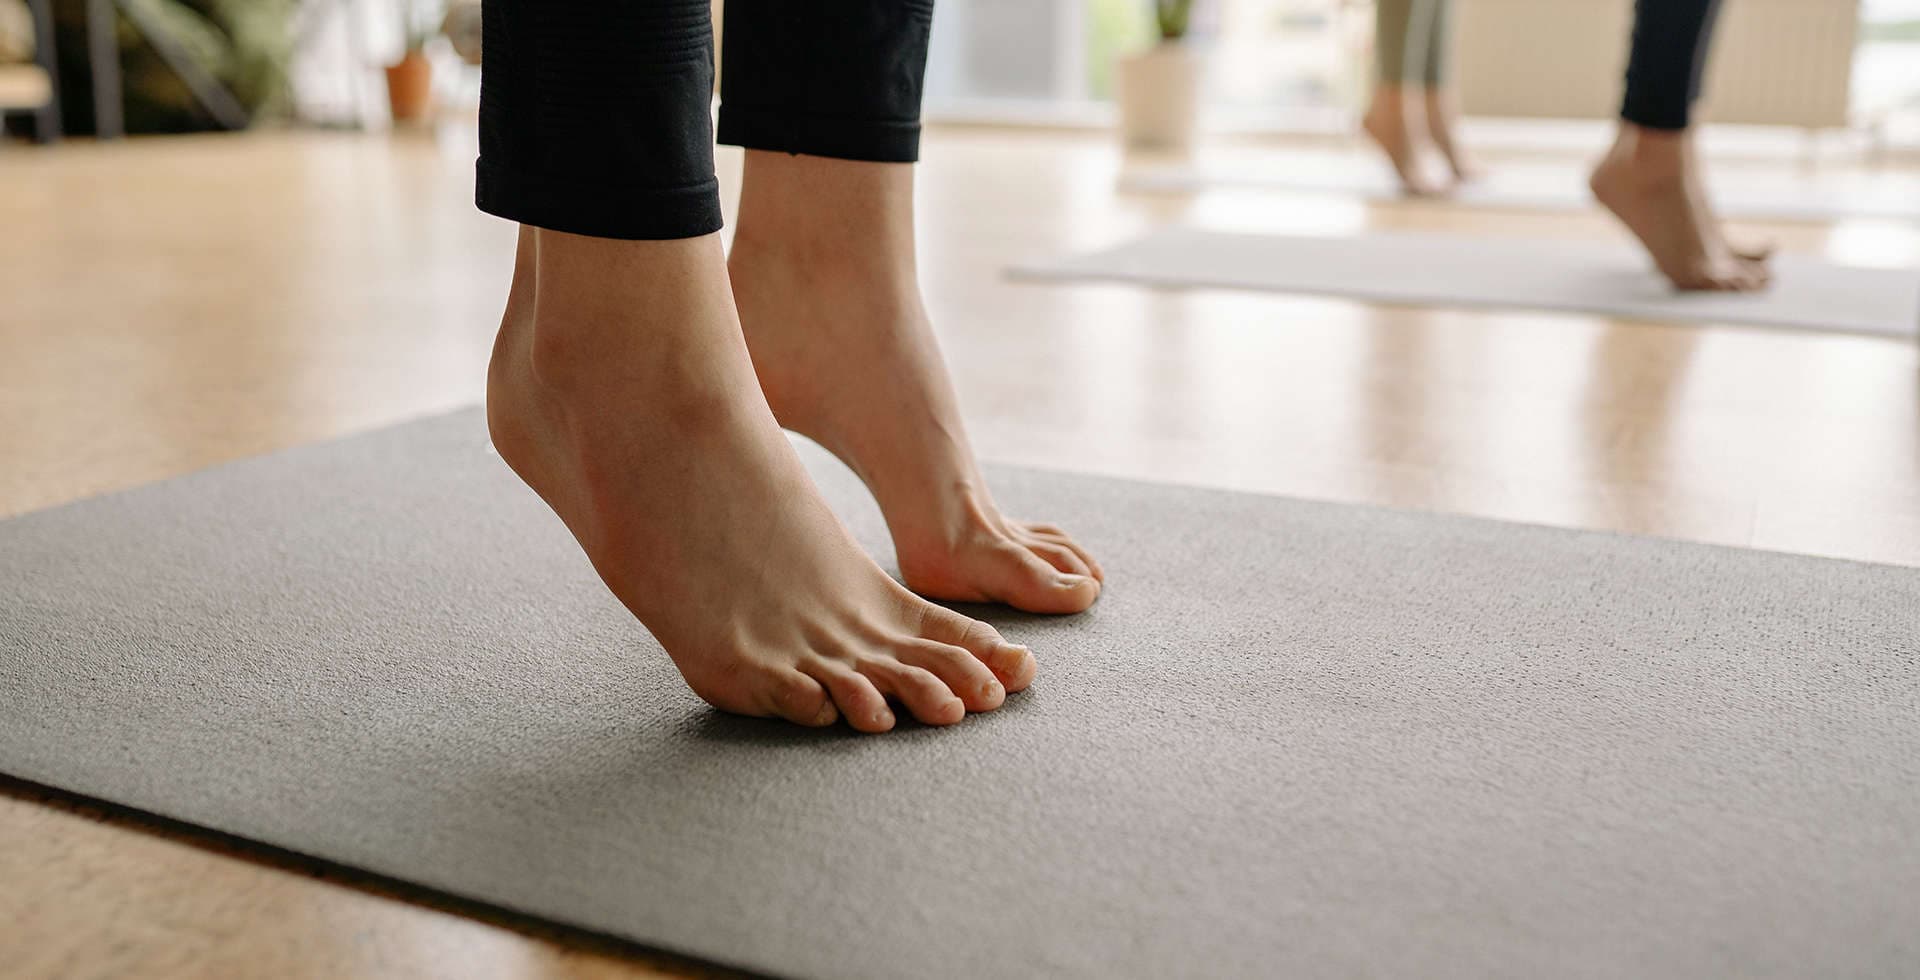 Närbild på fötter som utför yoga på en yogamatta